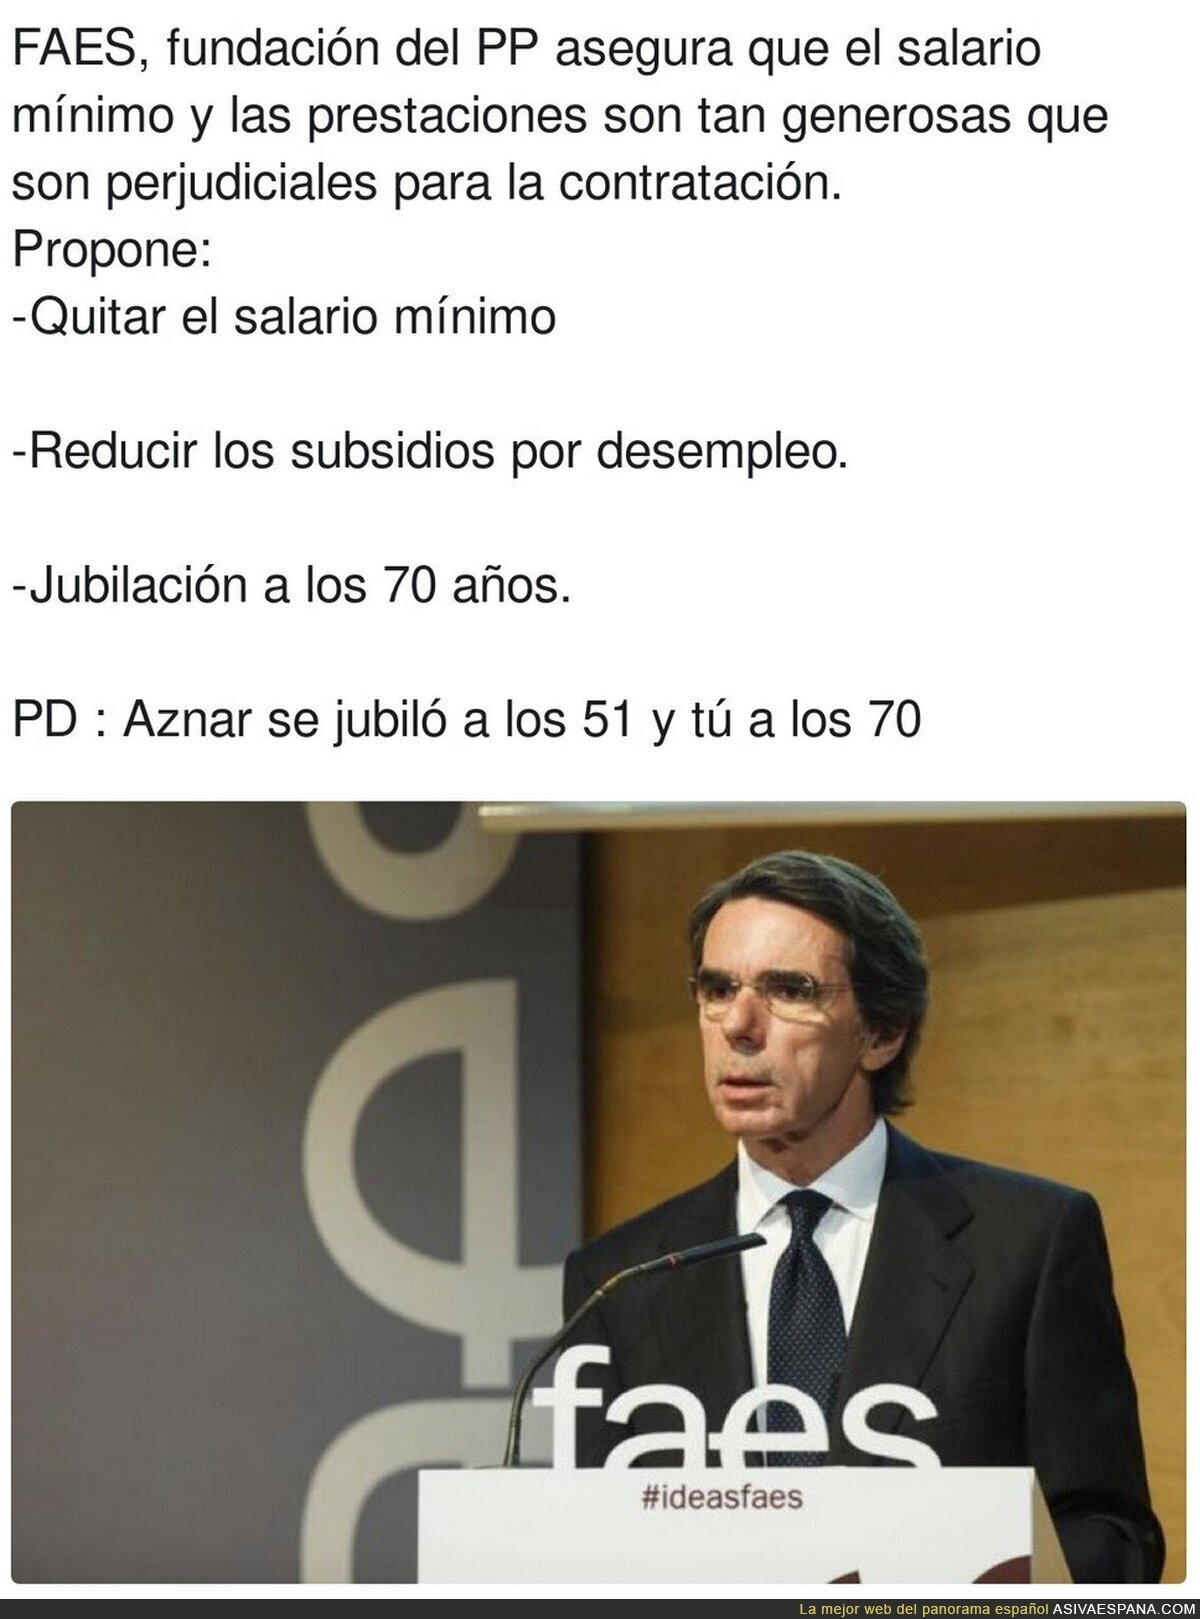 El futuro que quiere Aznar para ti